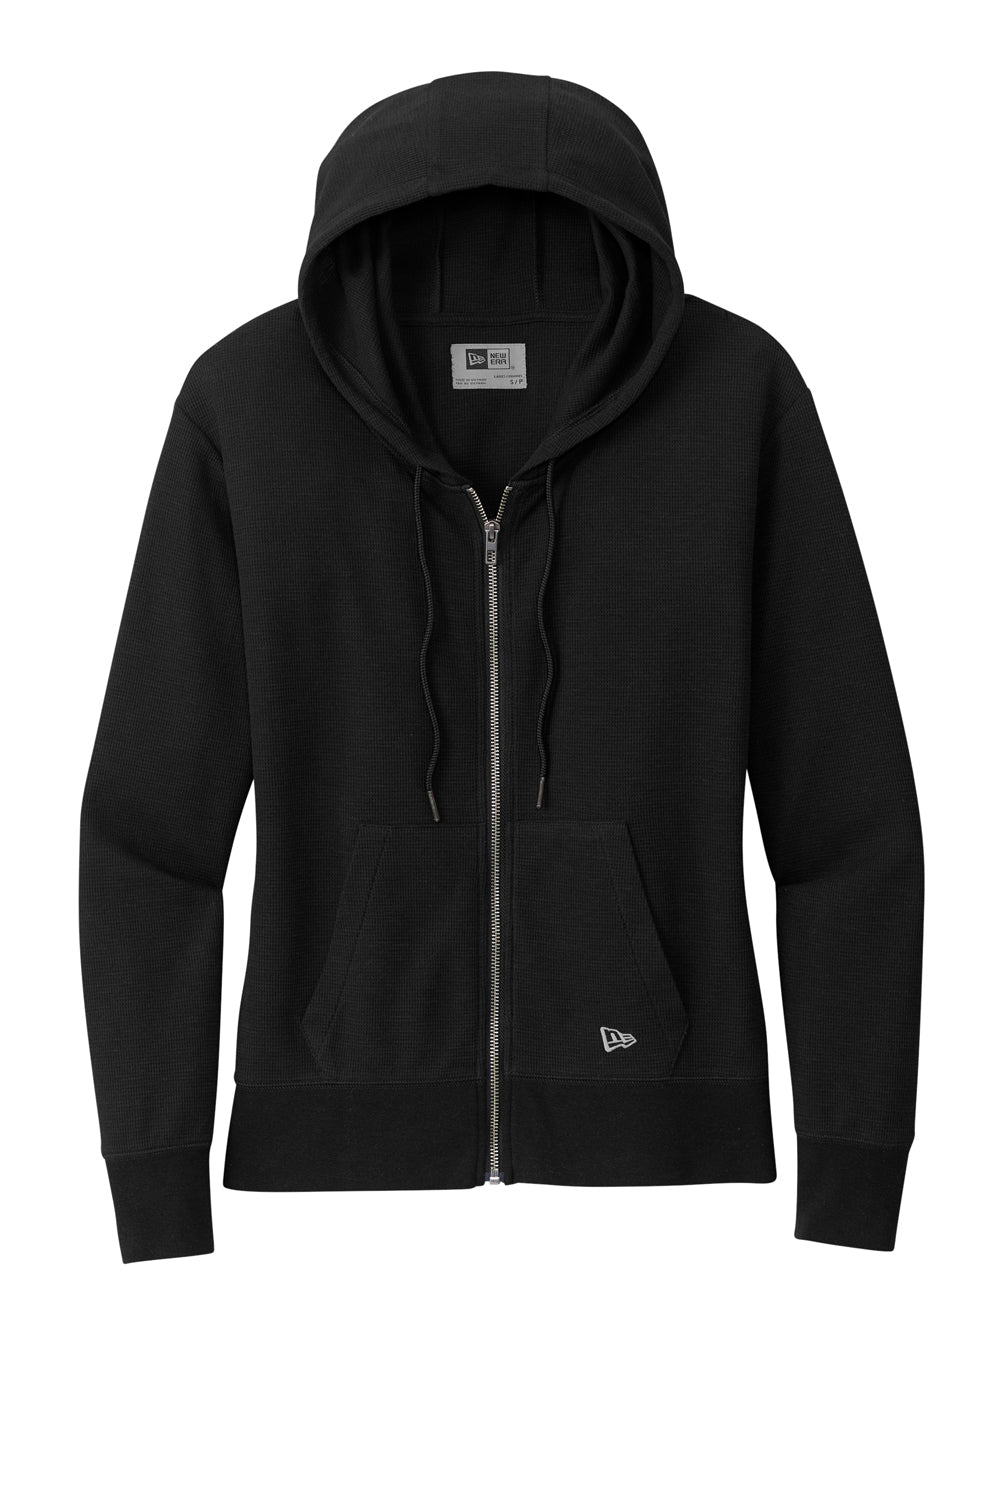 New Era LNEA141 Thermal Full Zip Hooded Sweatshirt Hoodie Black Flat Front